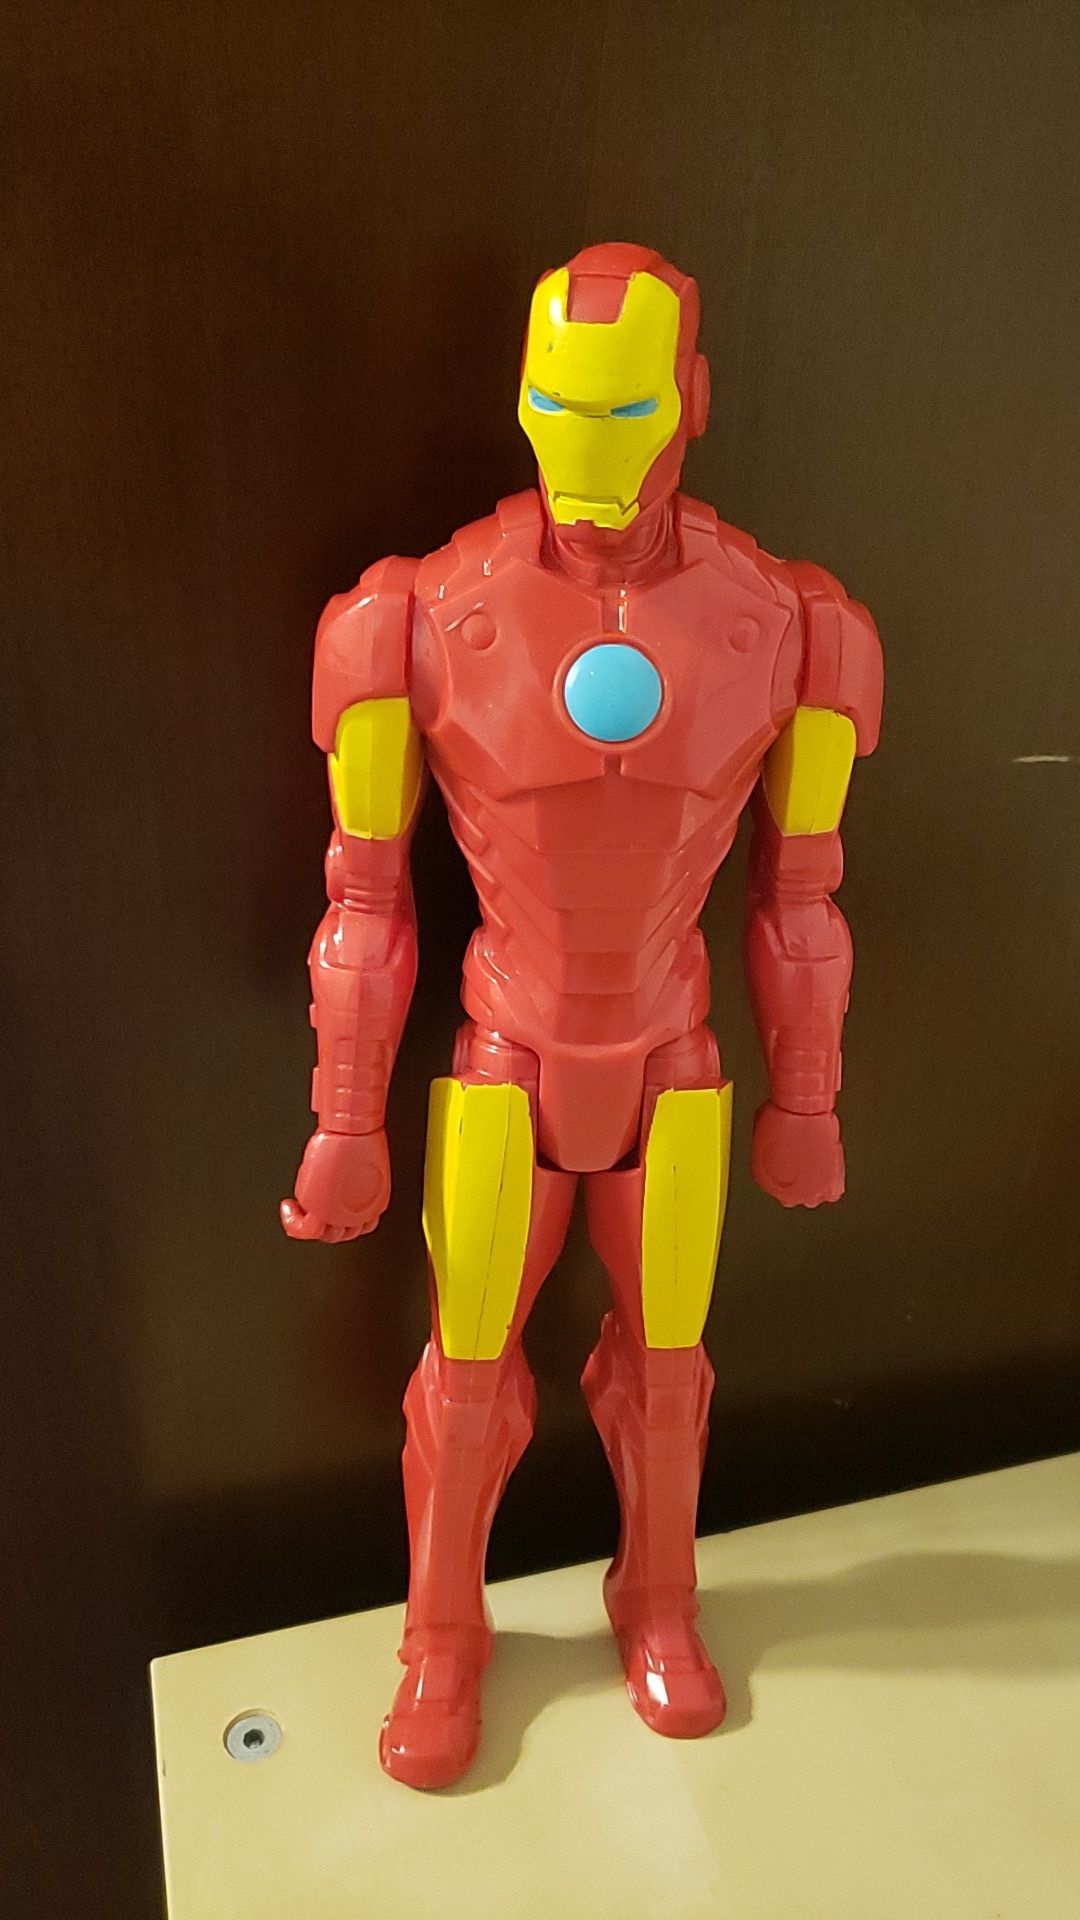 Marvel Avengers Figurines